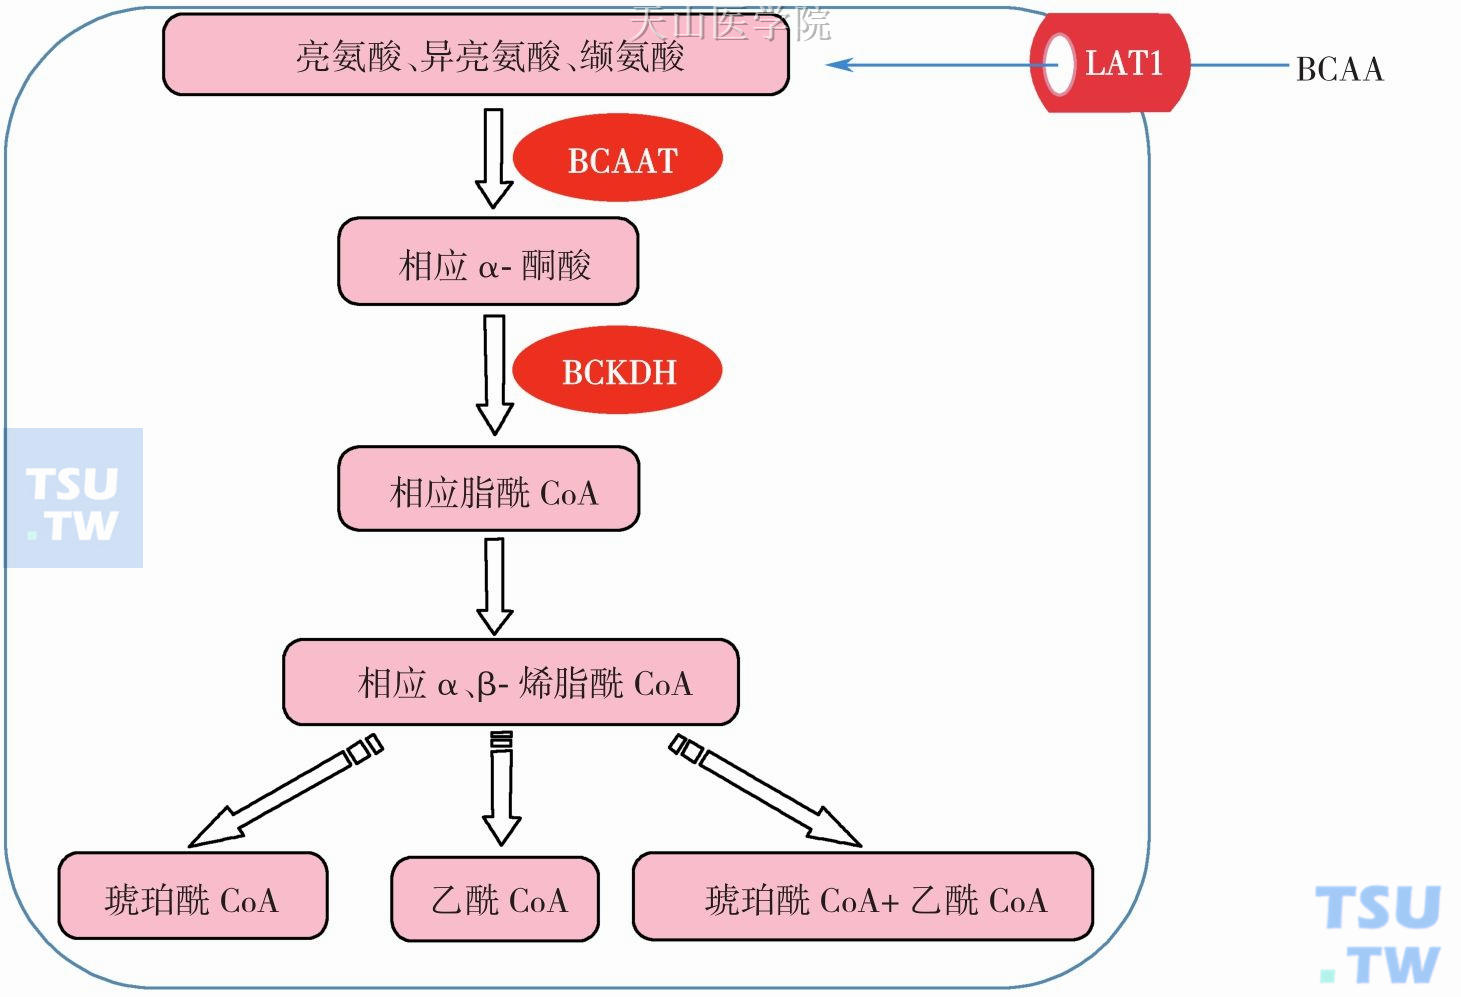 支链氨基酸代谢：BCAA，支链氨基酸；LAT1，L-型氨基酸转运载体；BCAAT，BCAA 氨基转移酶；BCKDH，支链酮酸脱氢酶